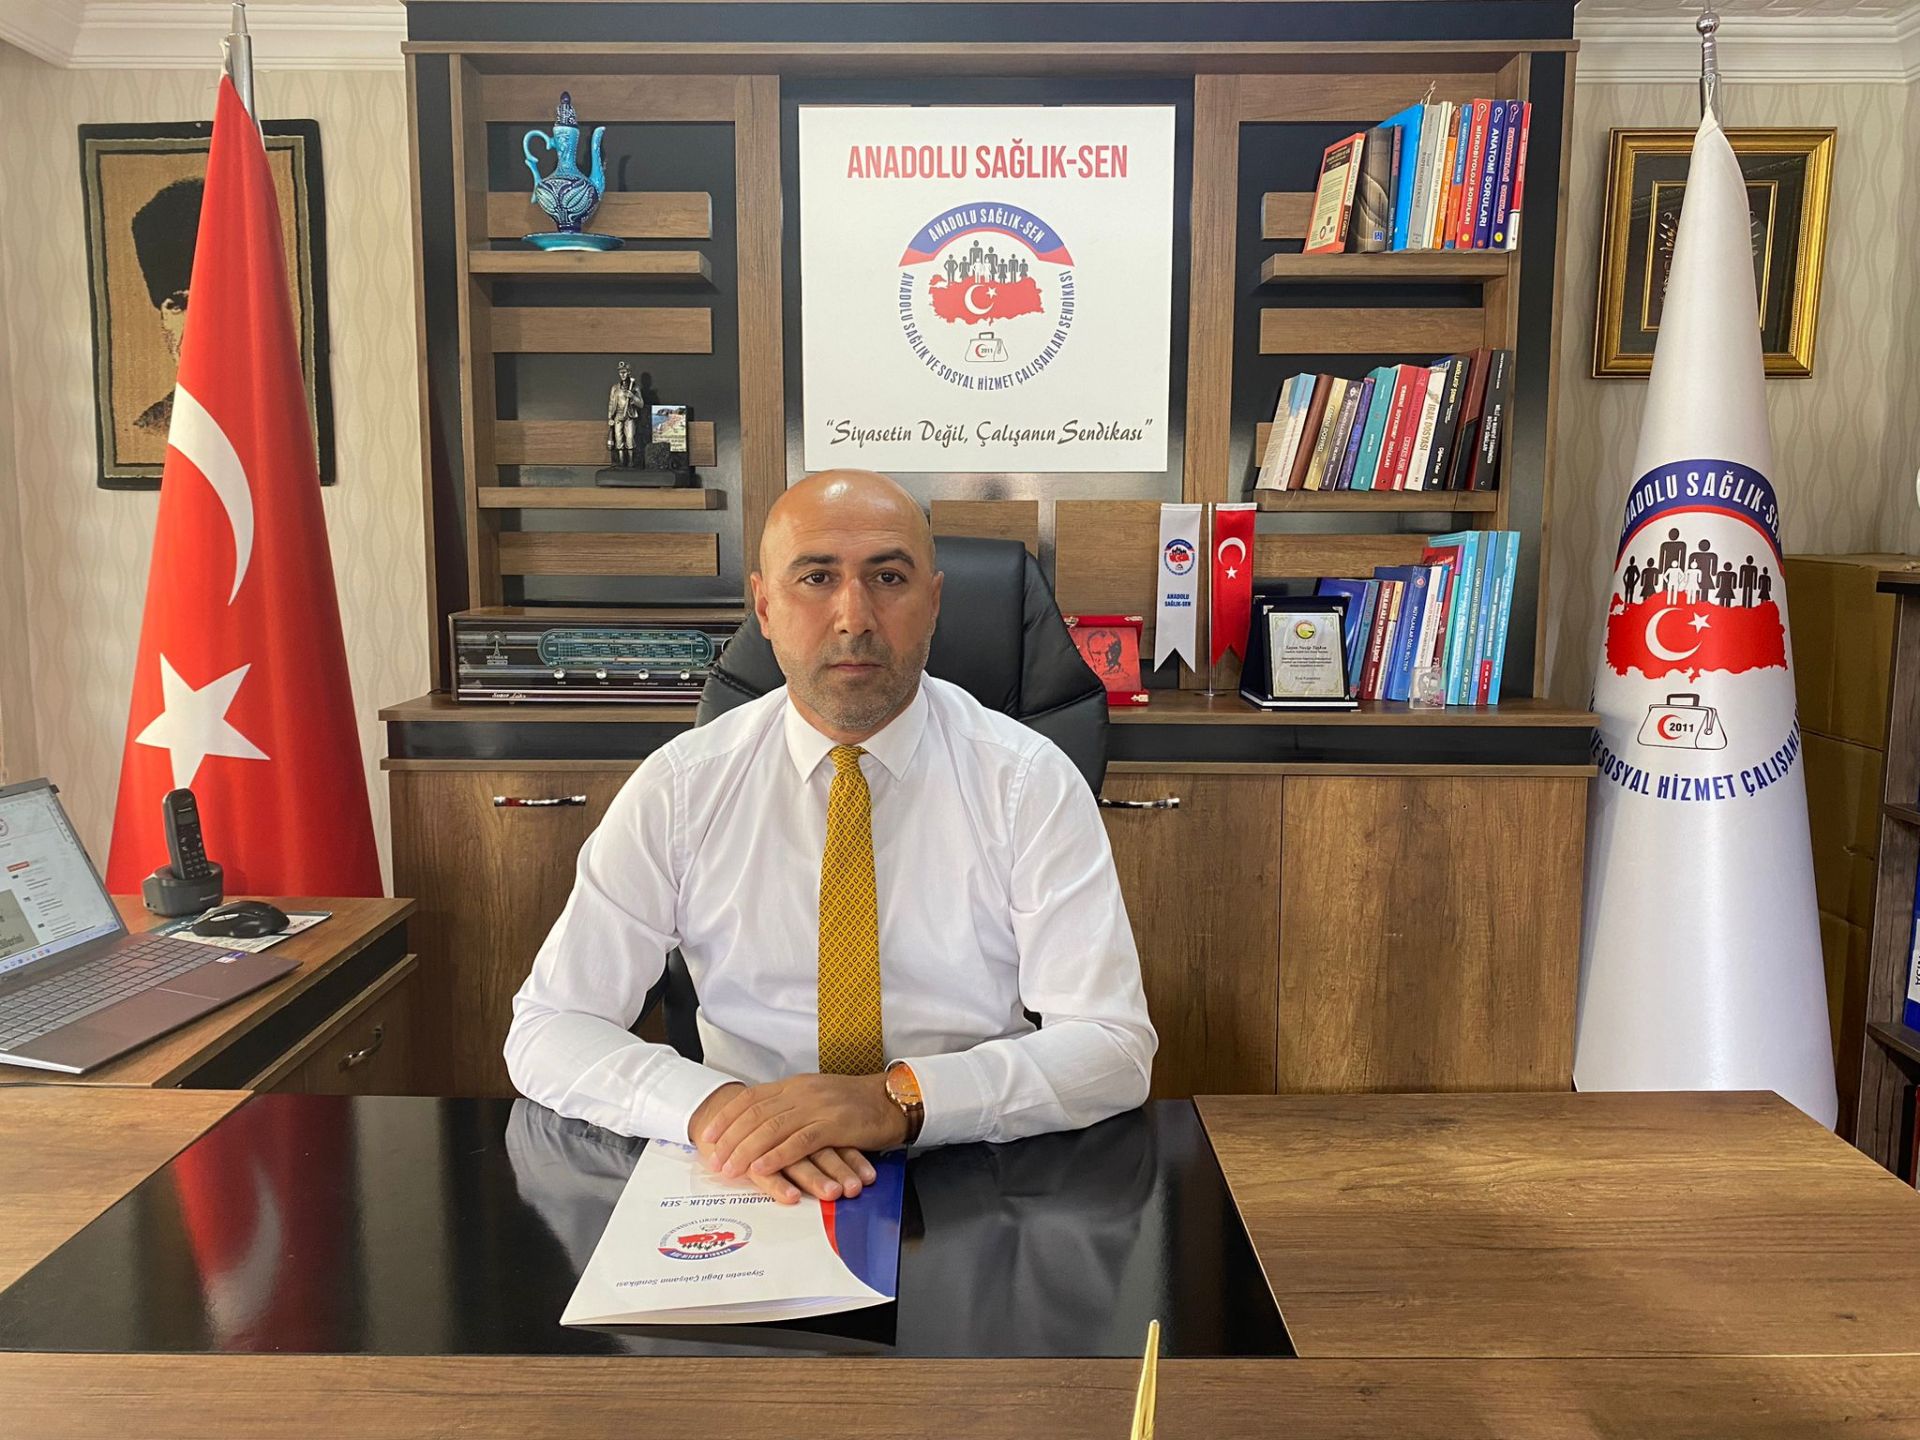 Anadolu Sağlık-Sen Genel Başkanı Taşkın: "Sağlık Çalışanlarına Bayram İkramiyesi Verilmelidir"